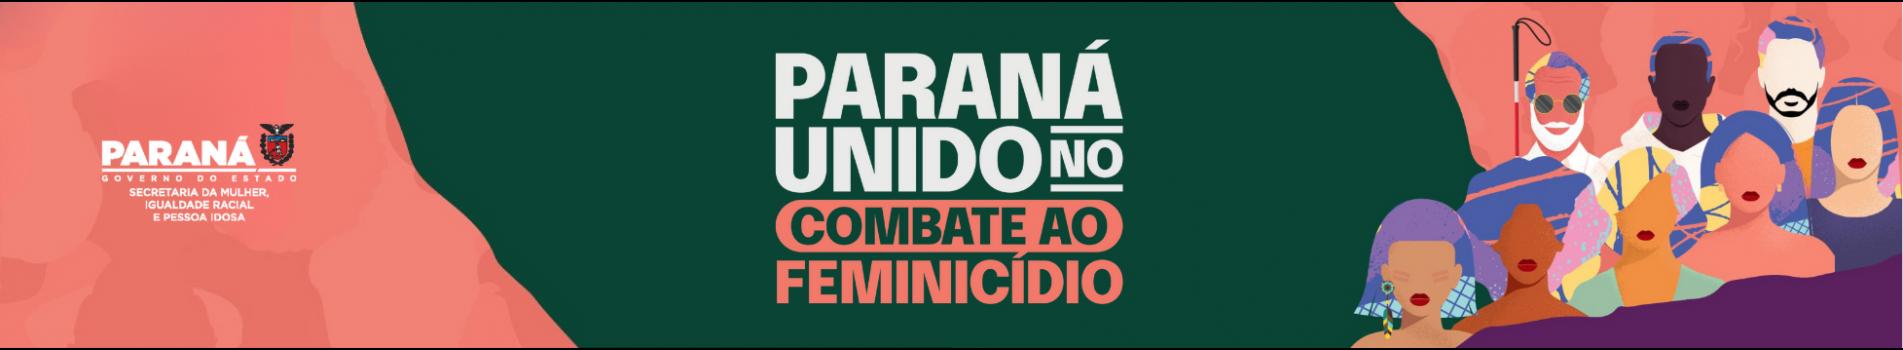 Paraná unido contra o feminicídio